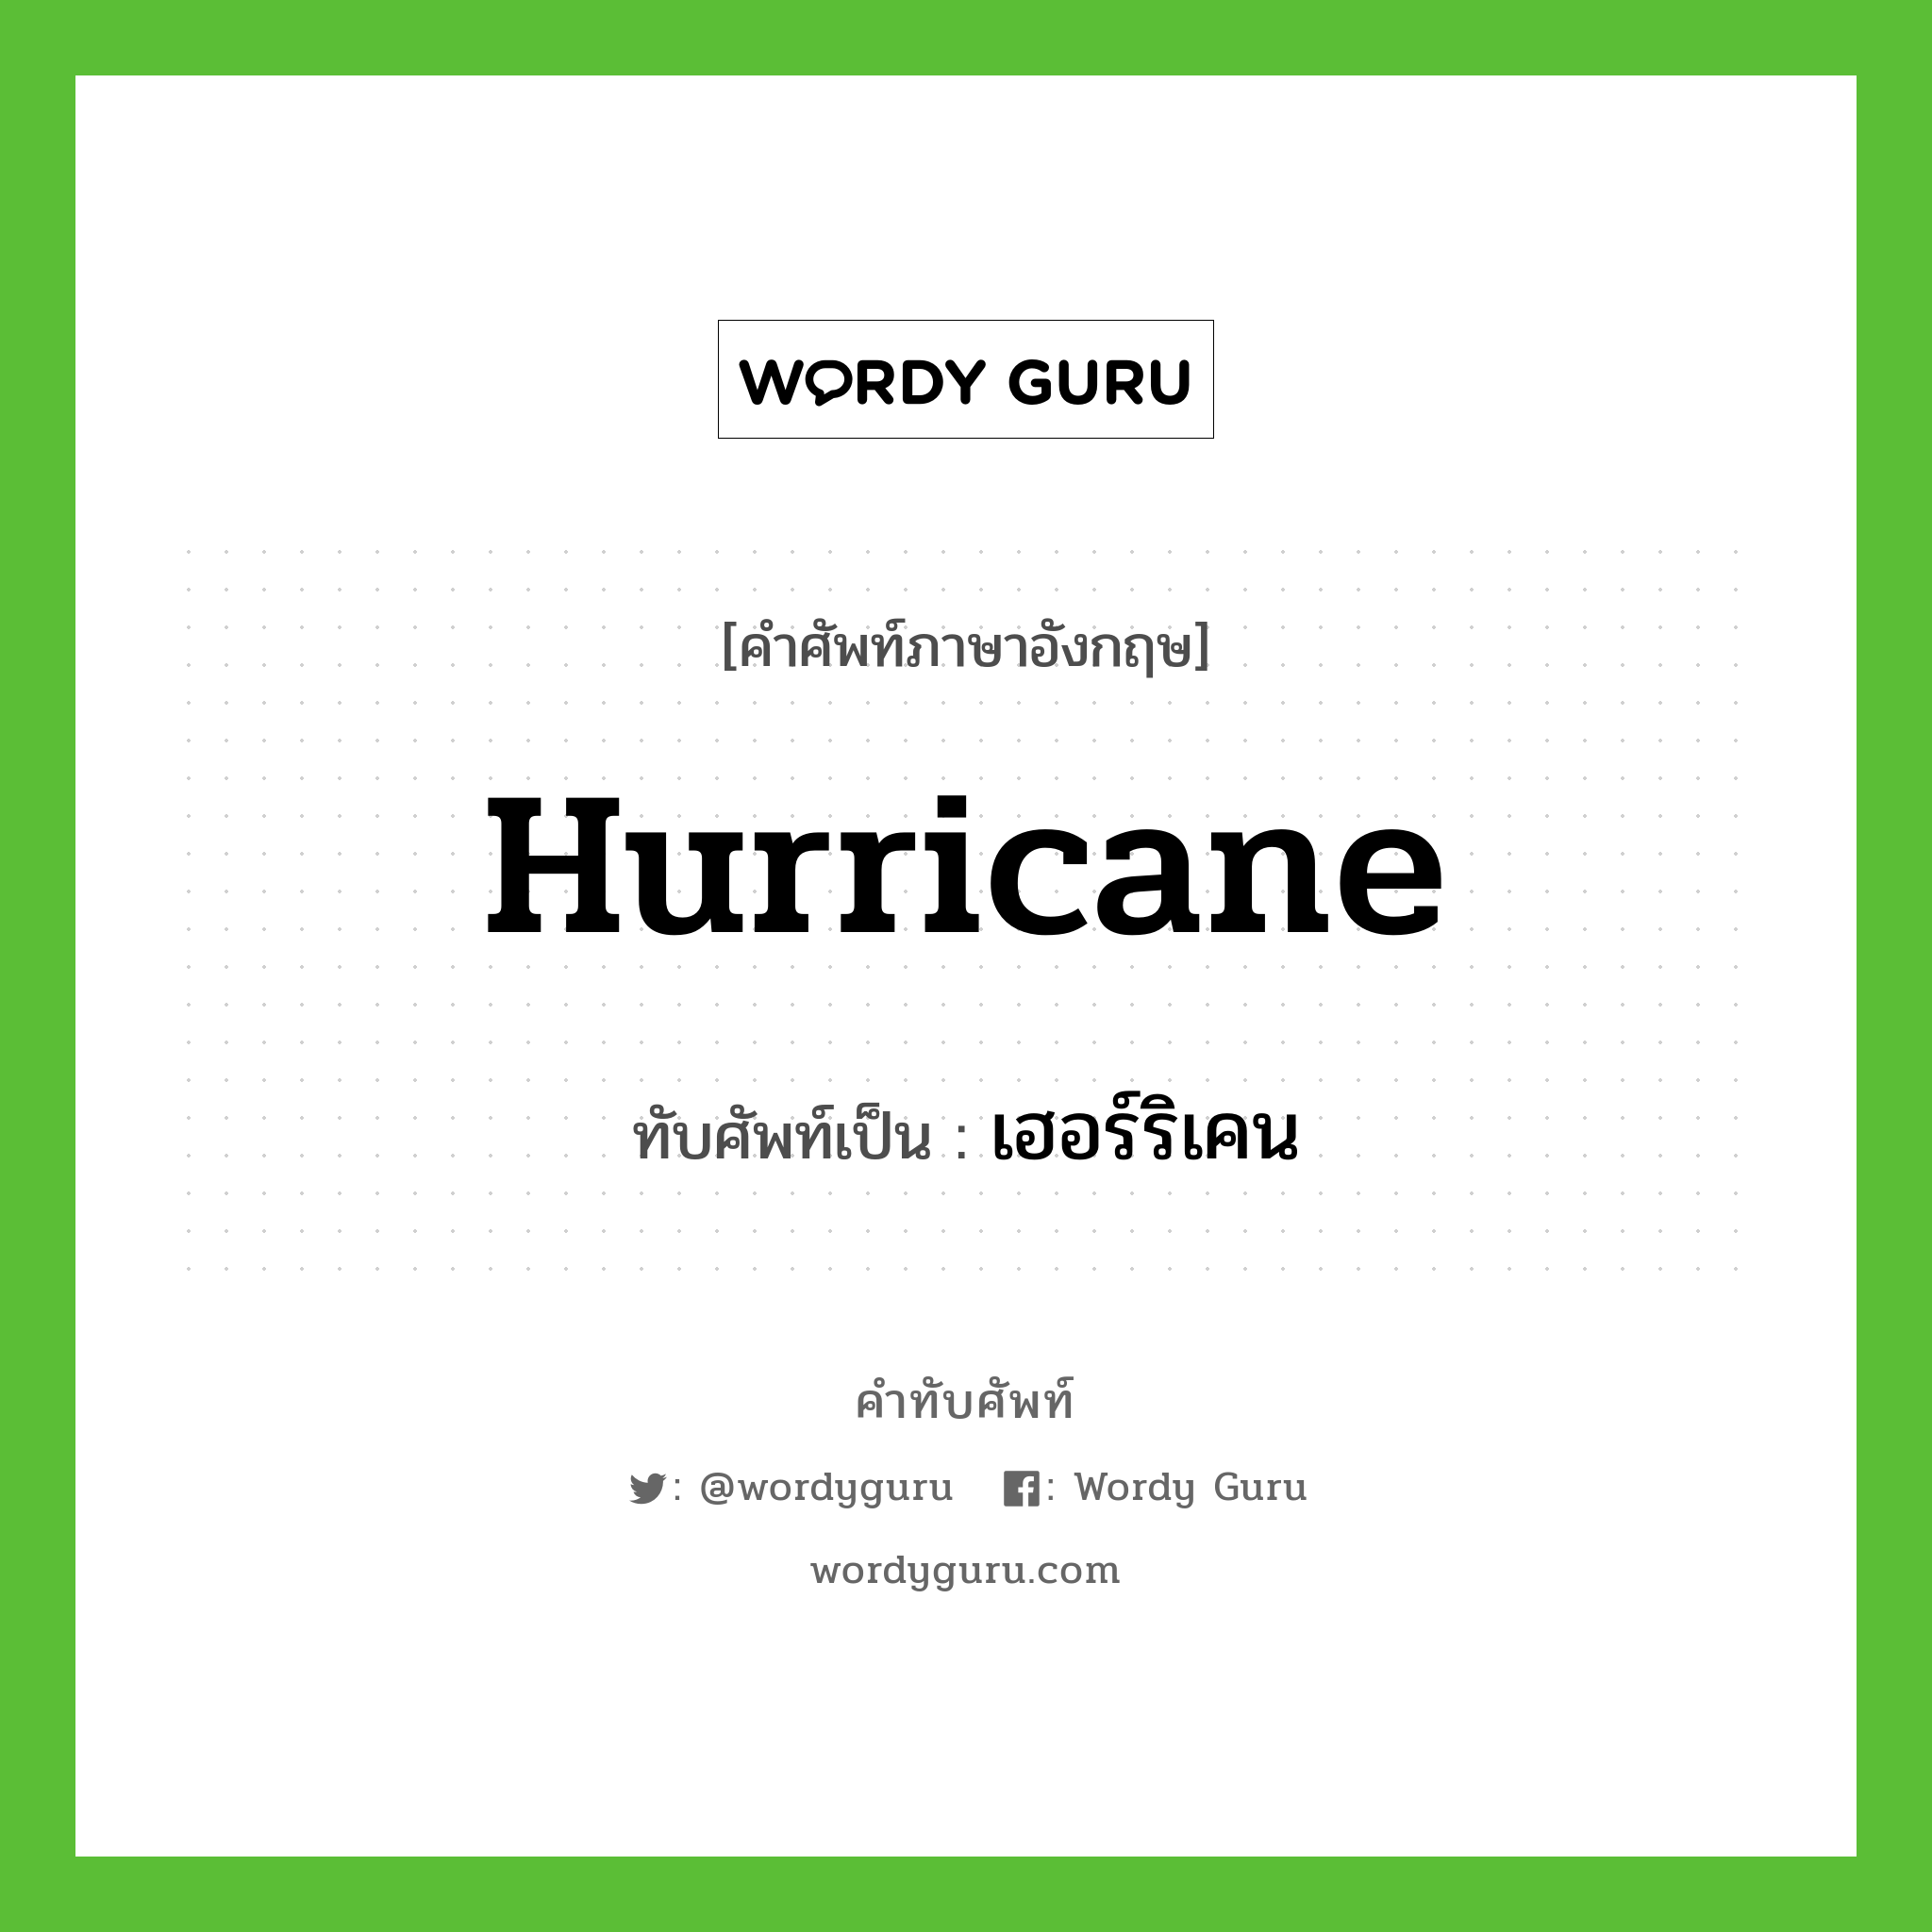 hurricane เขียนเป็นคำไทยว่าอะไร?, คำศัพท์ภาษาอังกฤษ hurricane ทับศัพท์เป็น เฮอร์ริเคน